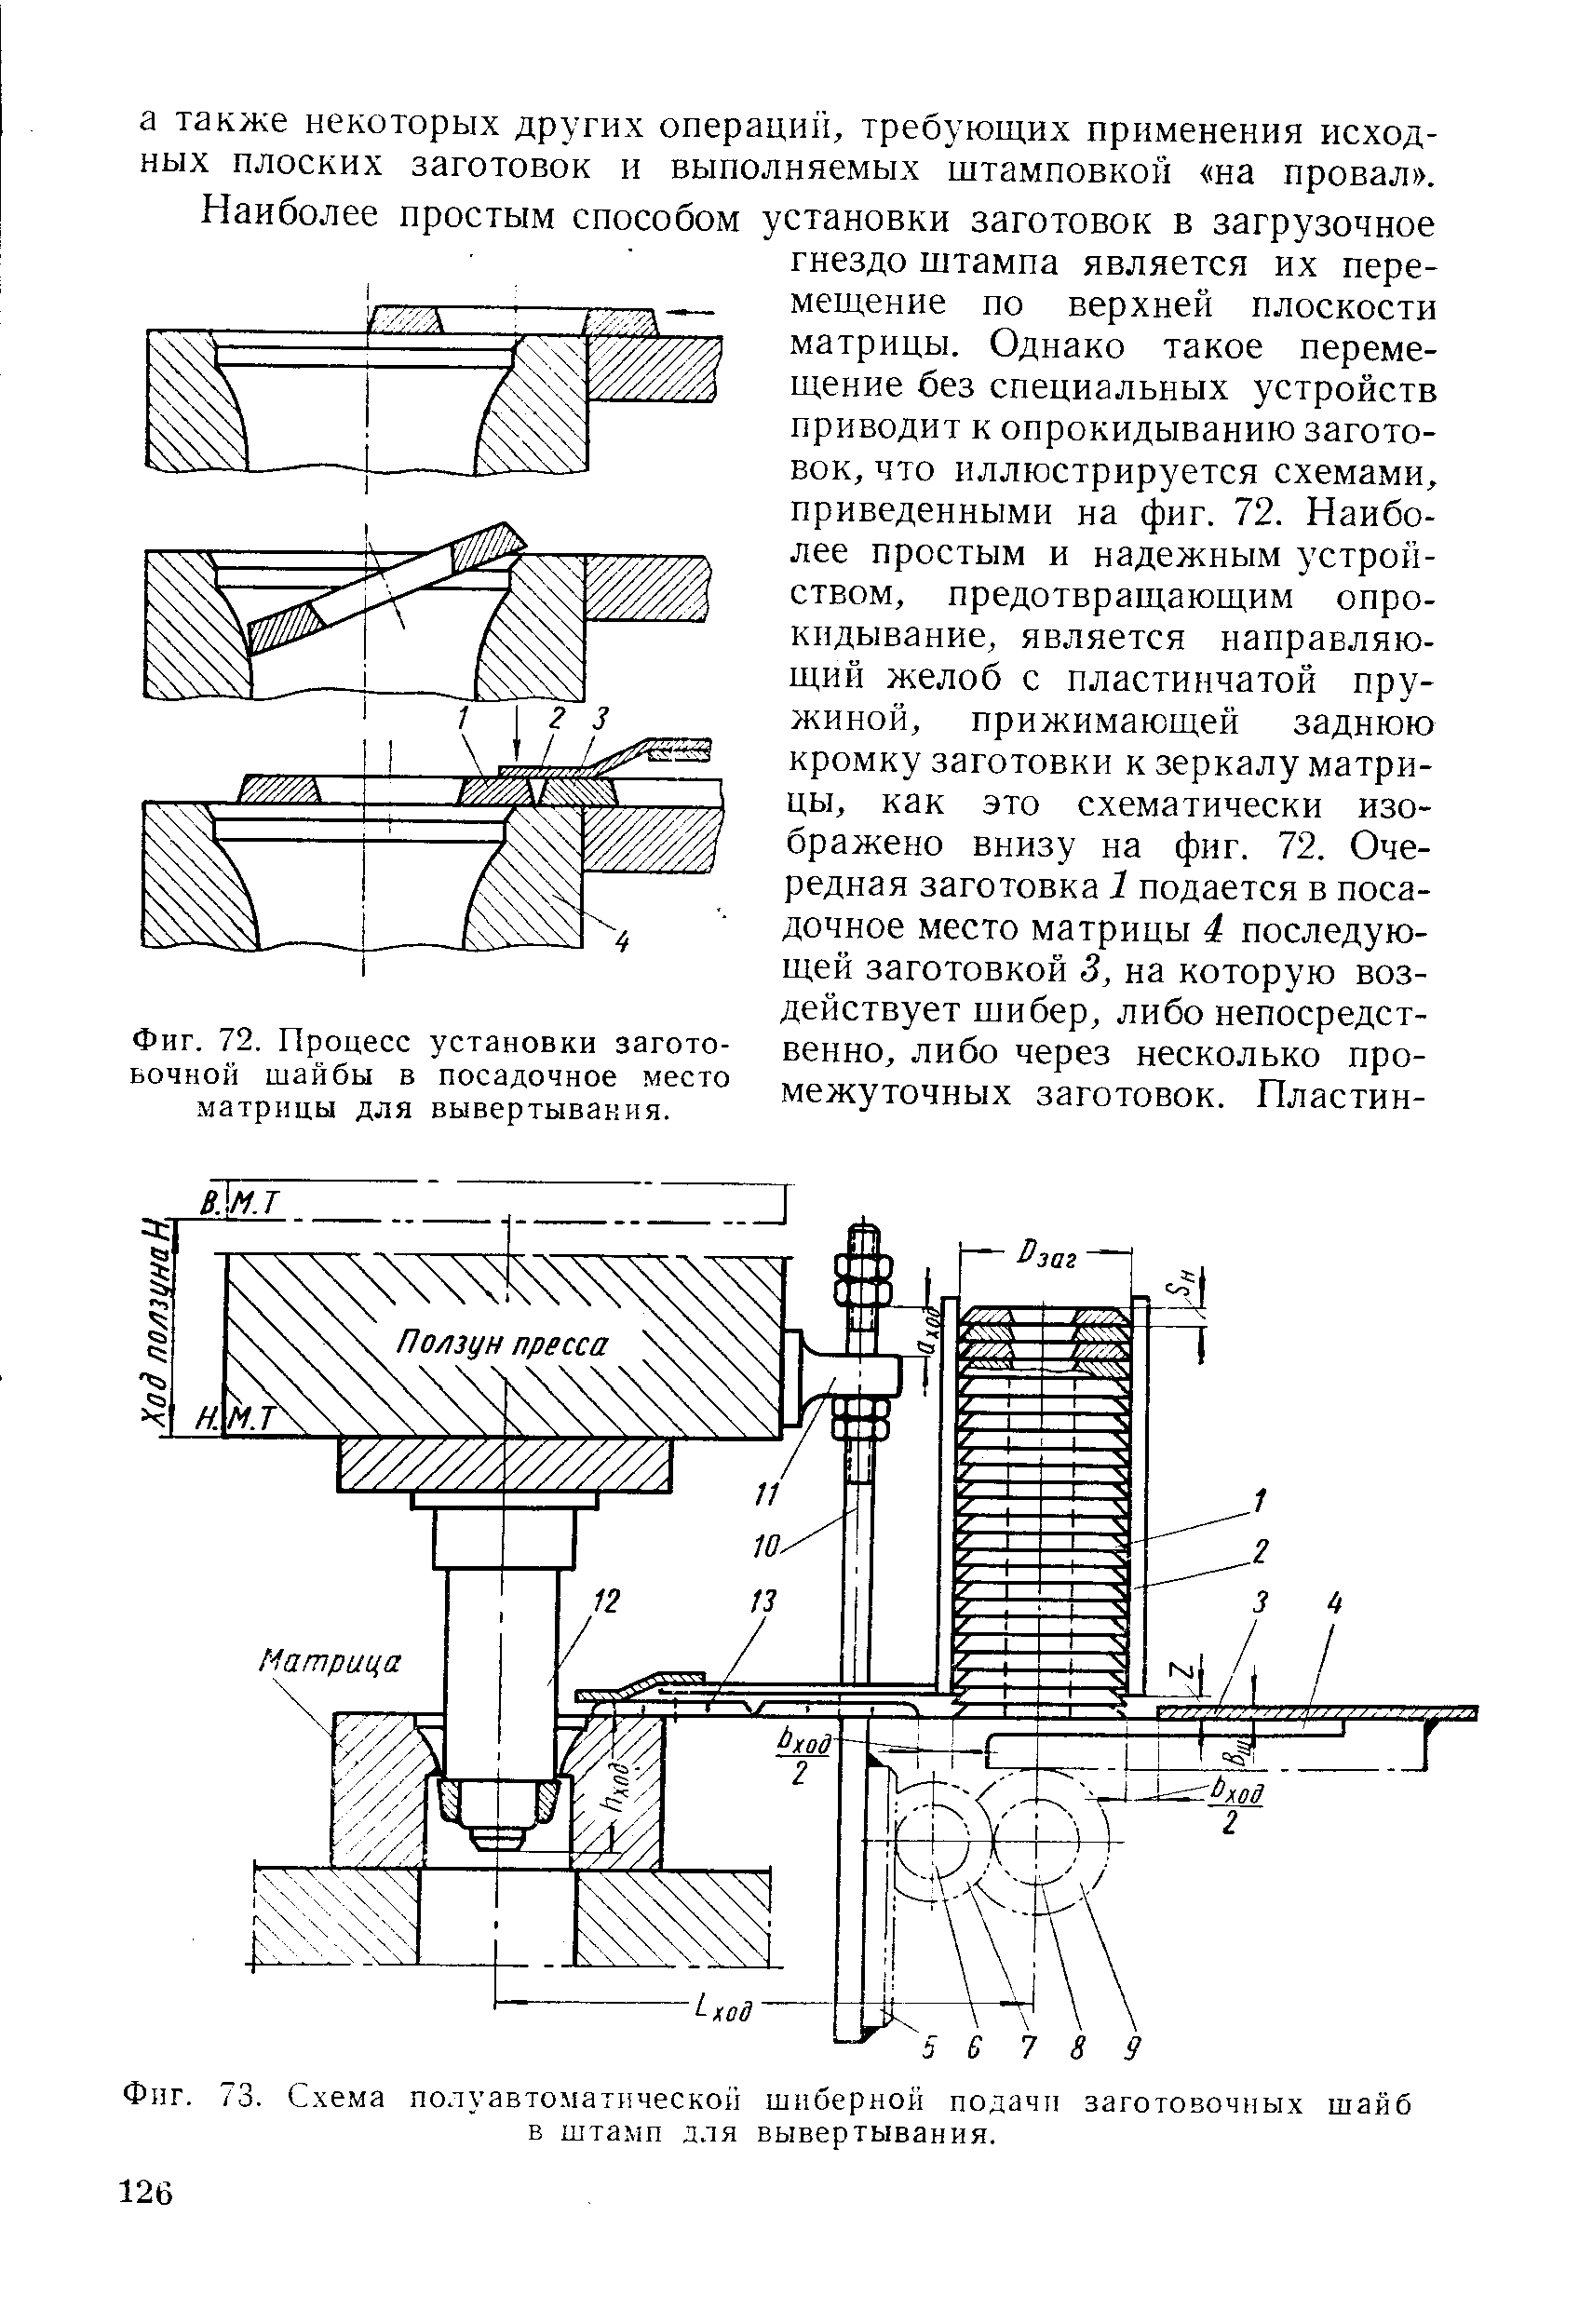 Фиг. 73. Схема полуавтоматической шиберной подачи заготовочных шайб в штамп для вывертывания.
